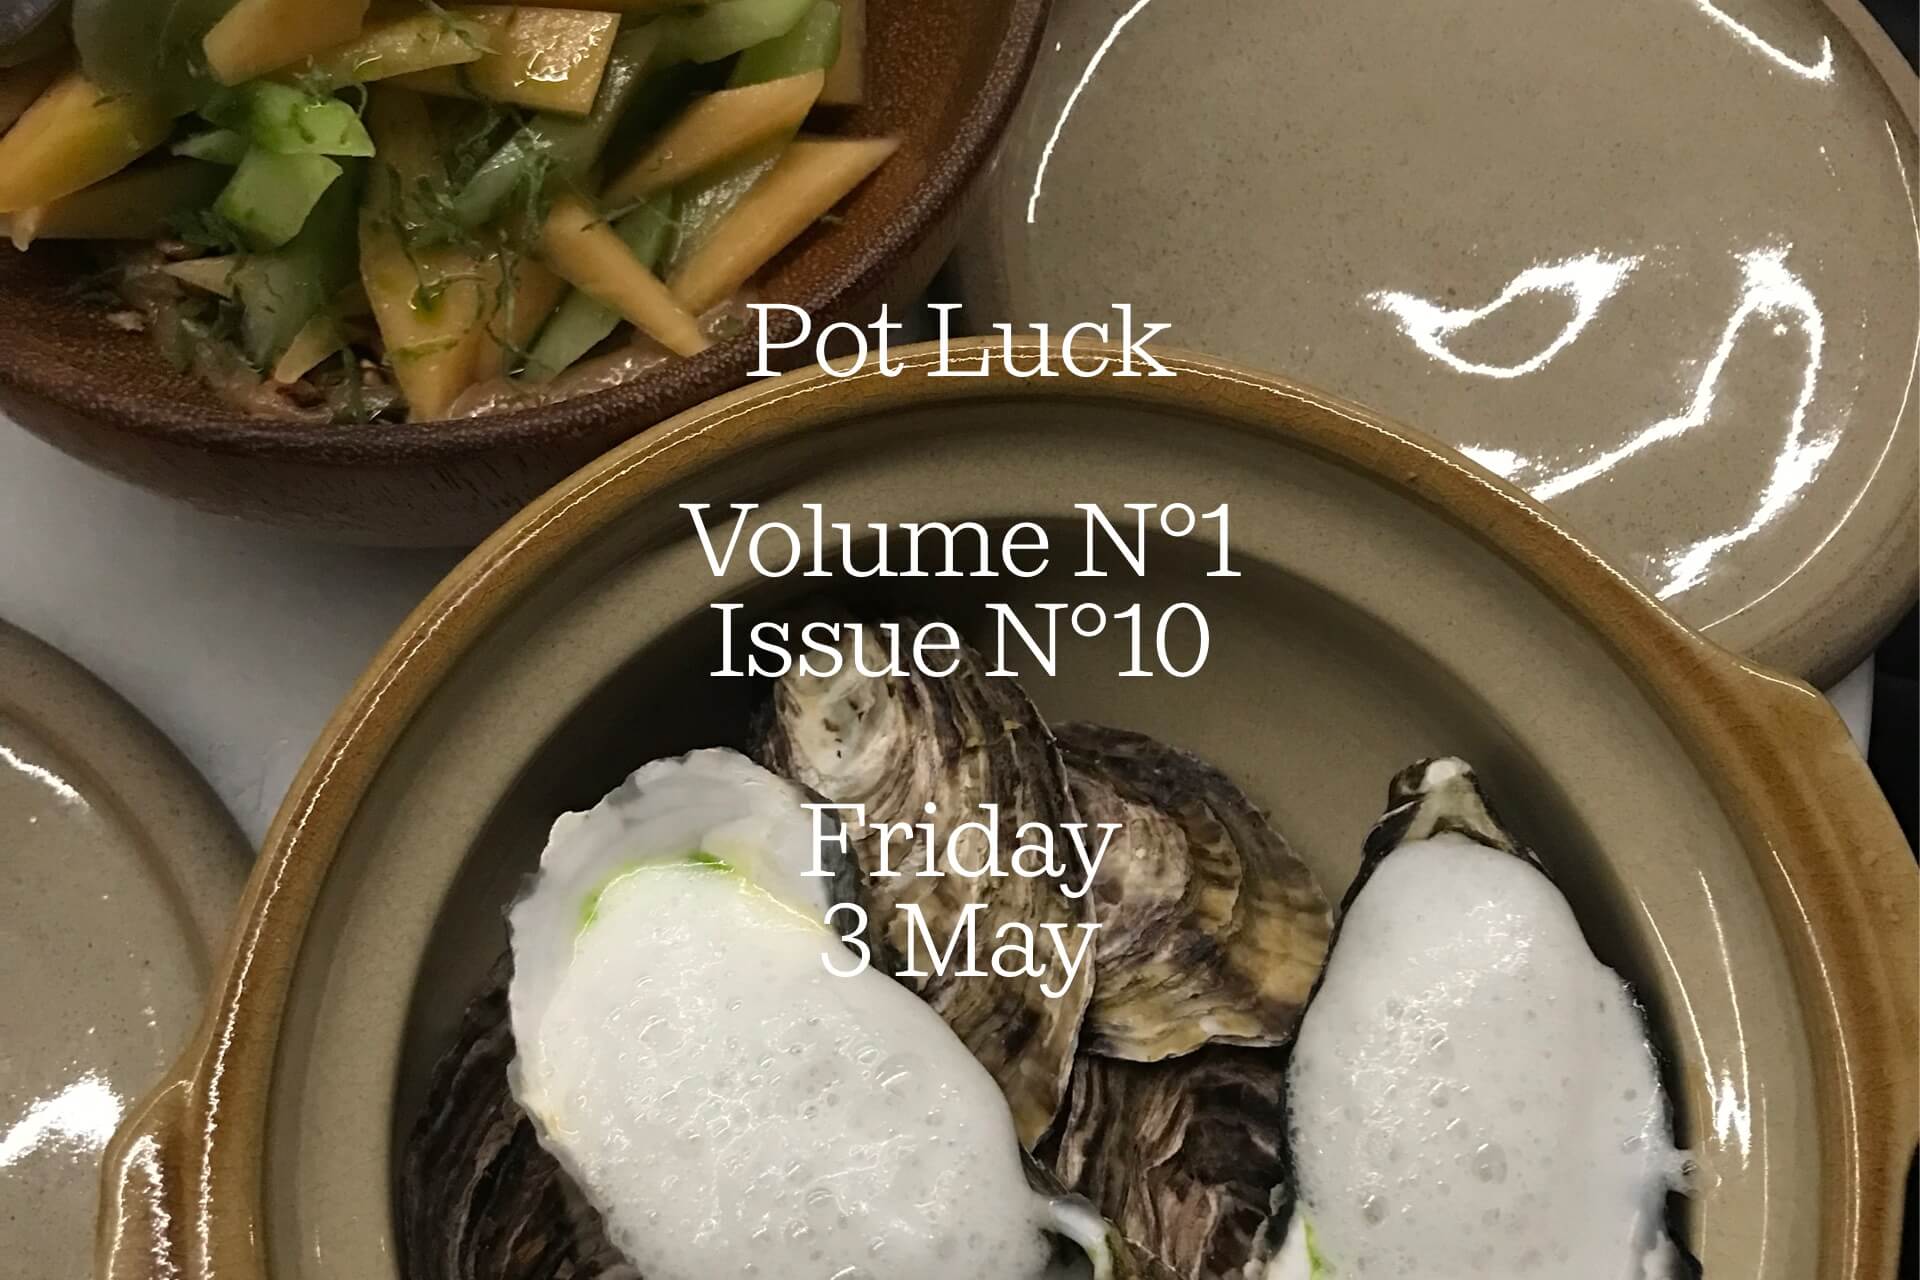 Pot Luck — Friday May 3